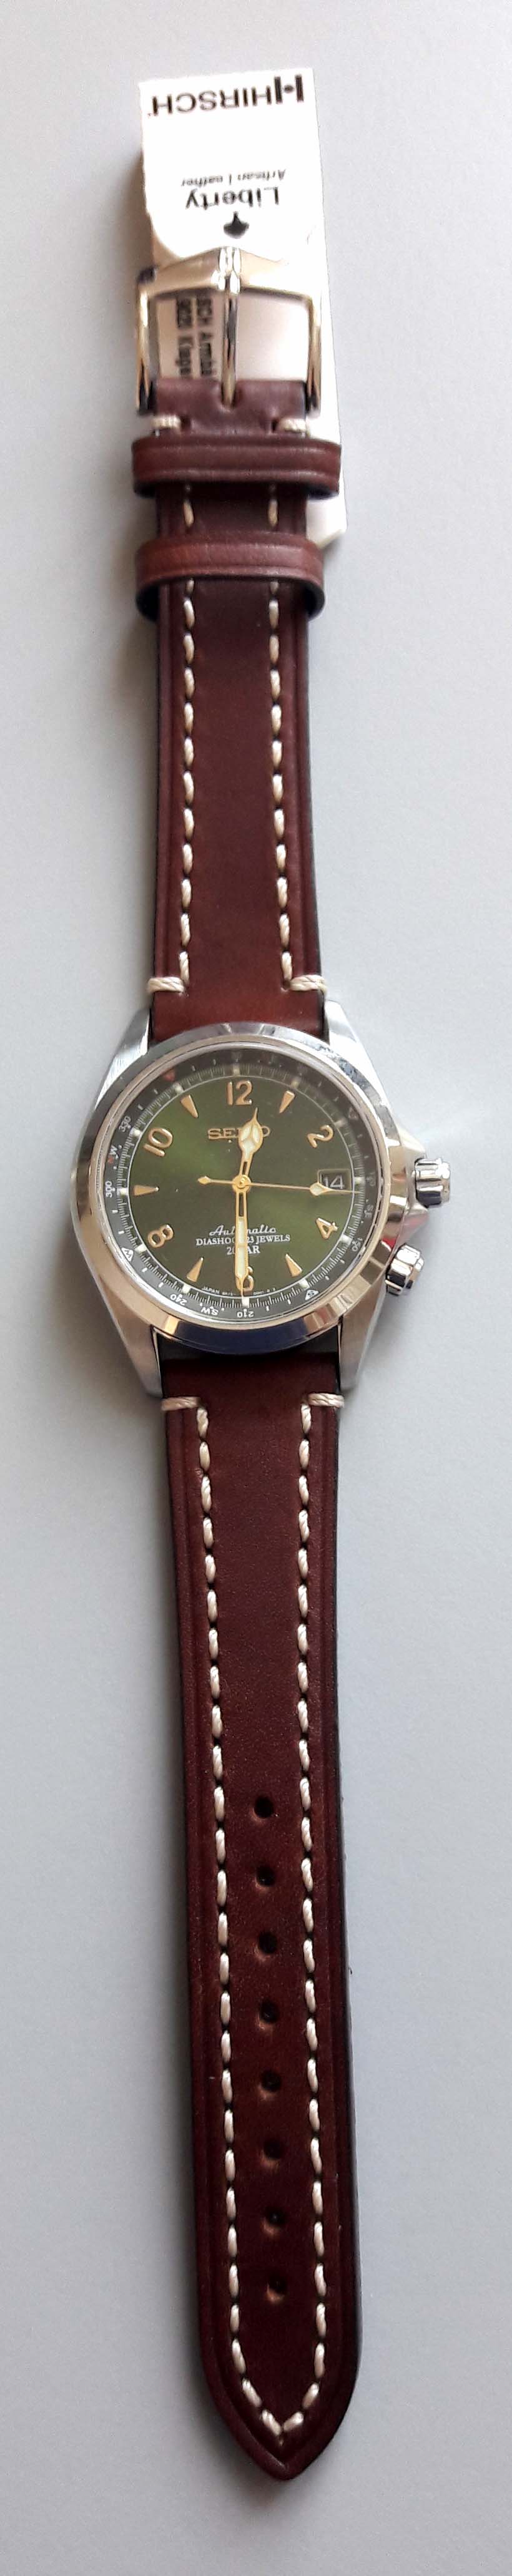 montre - cherche une montre fond vert et de belles aiguilles - Page 4 Hirsch10